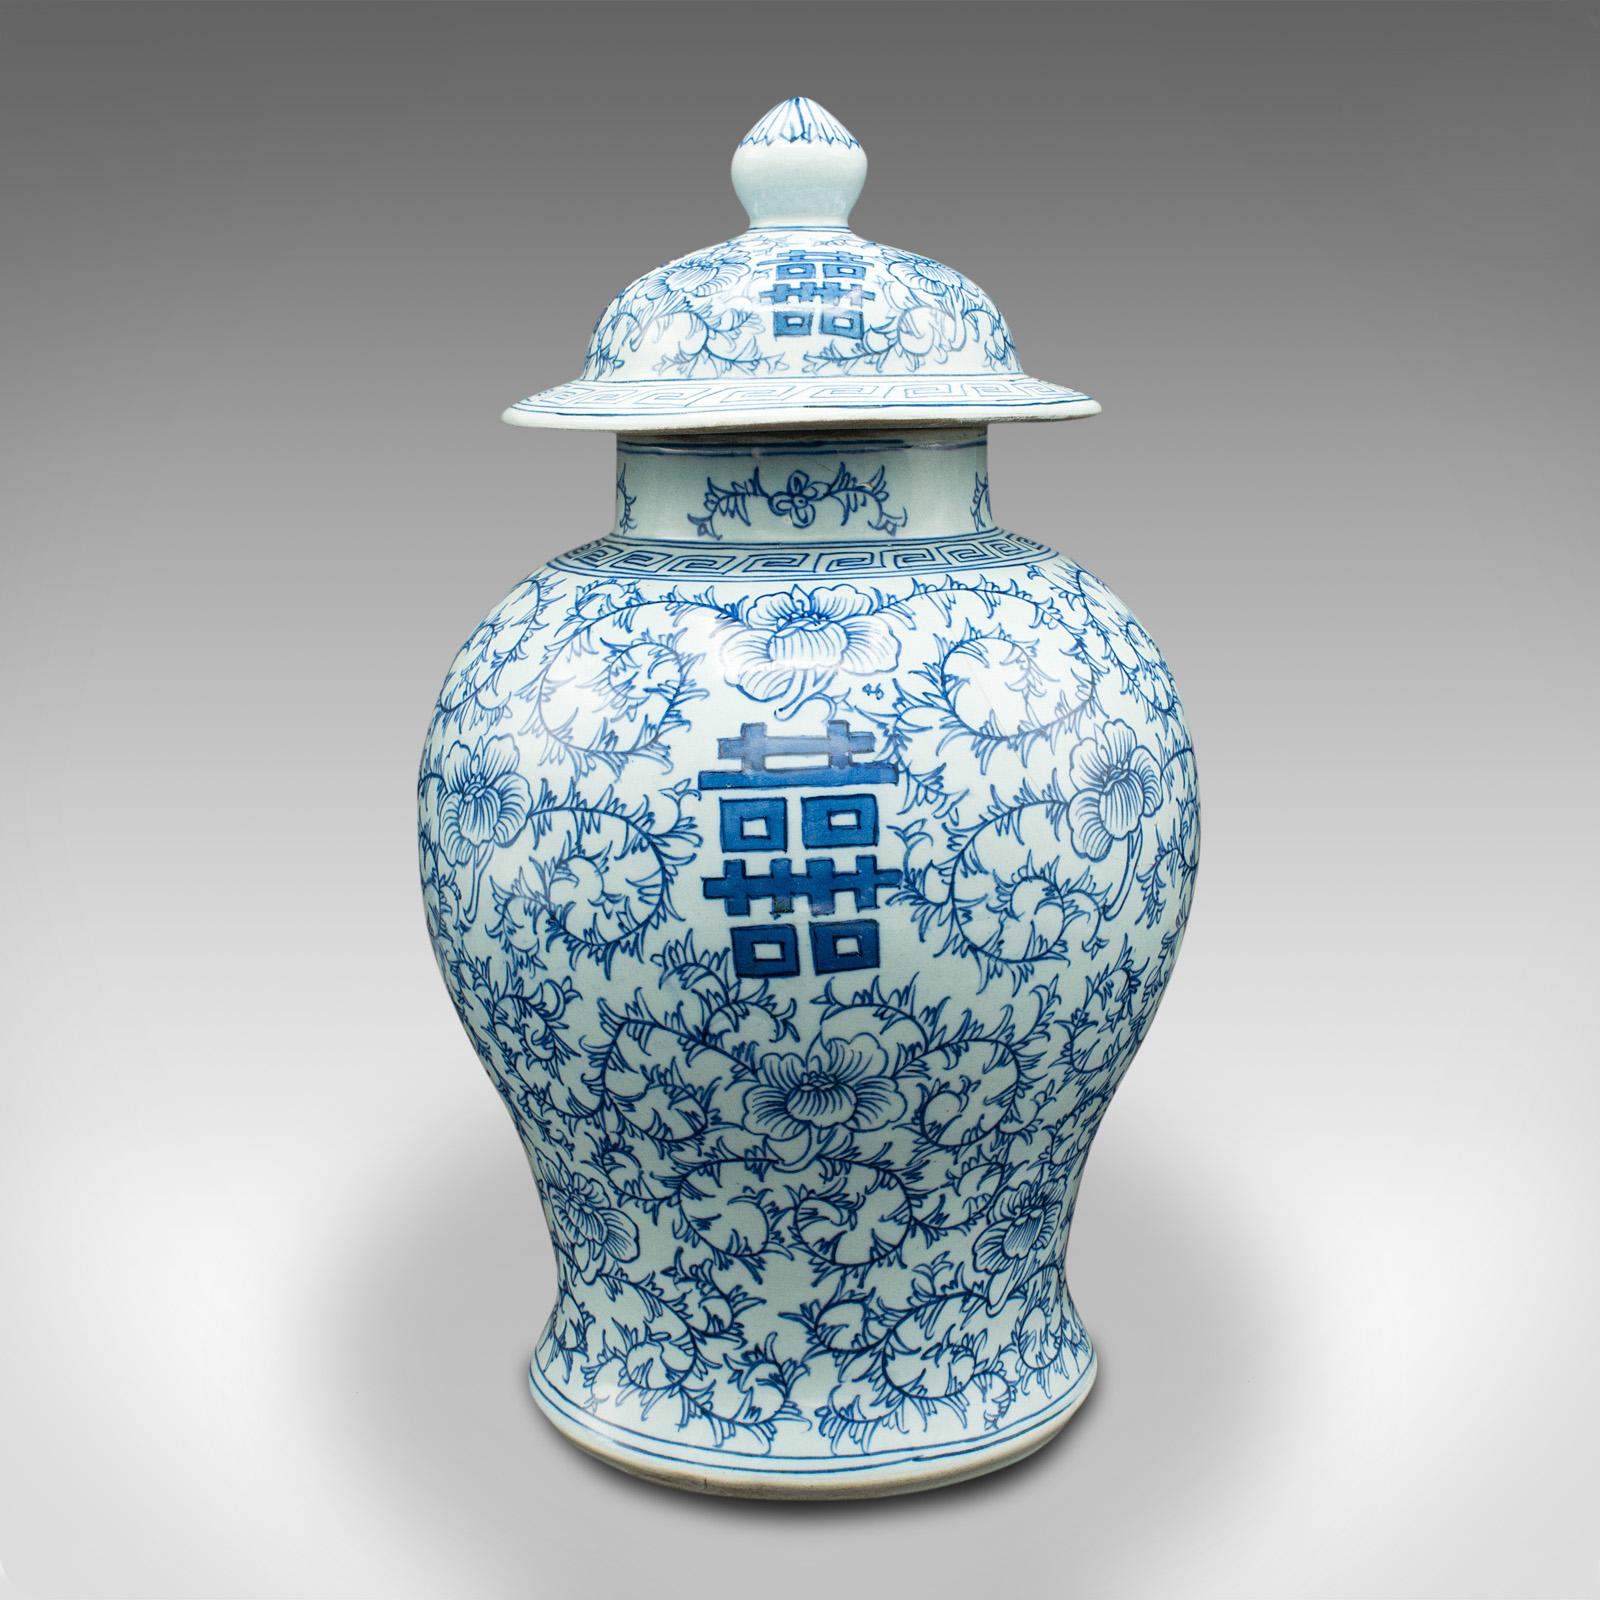 Vintage Decorative Baluster Urn, Chinese, Ceramic, Lidded Vase, Art Deco, C.1930 For Sale 2